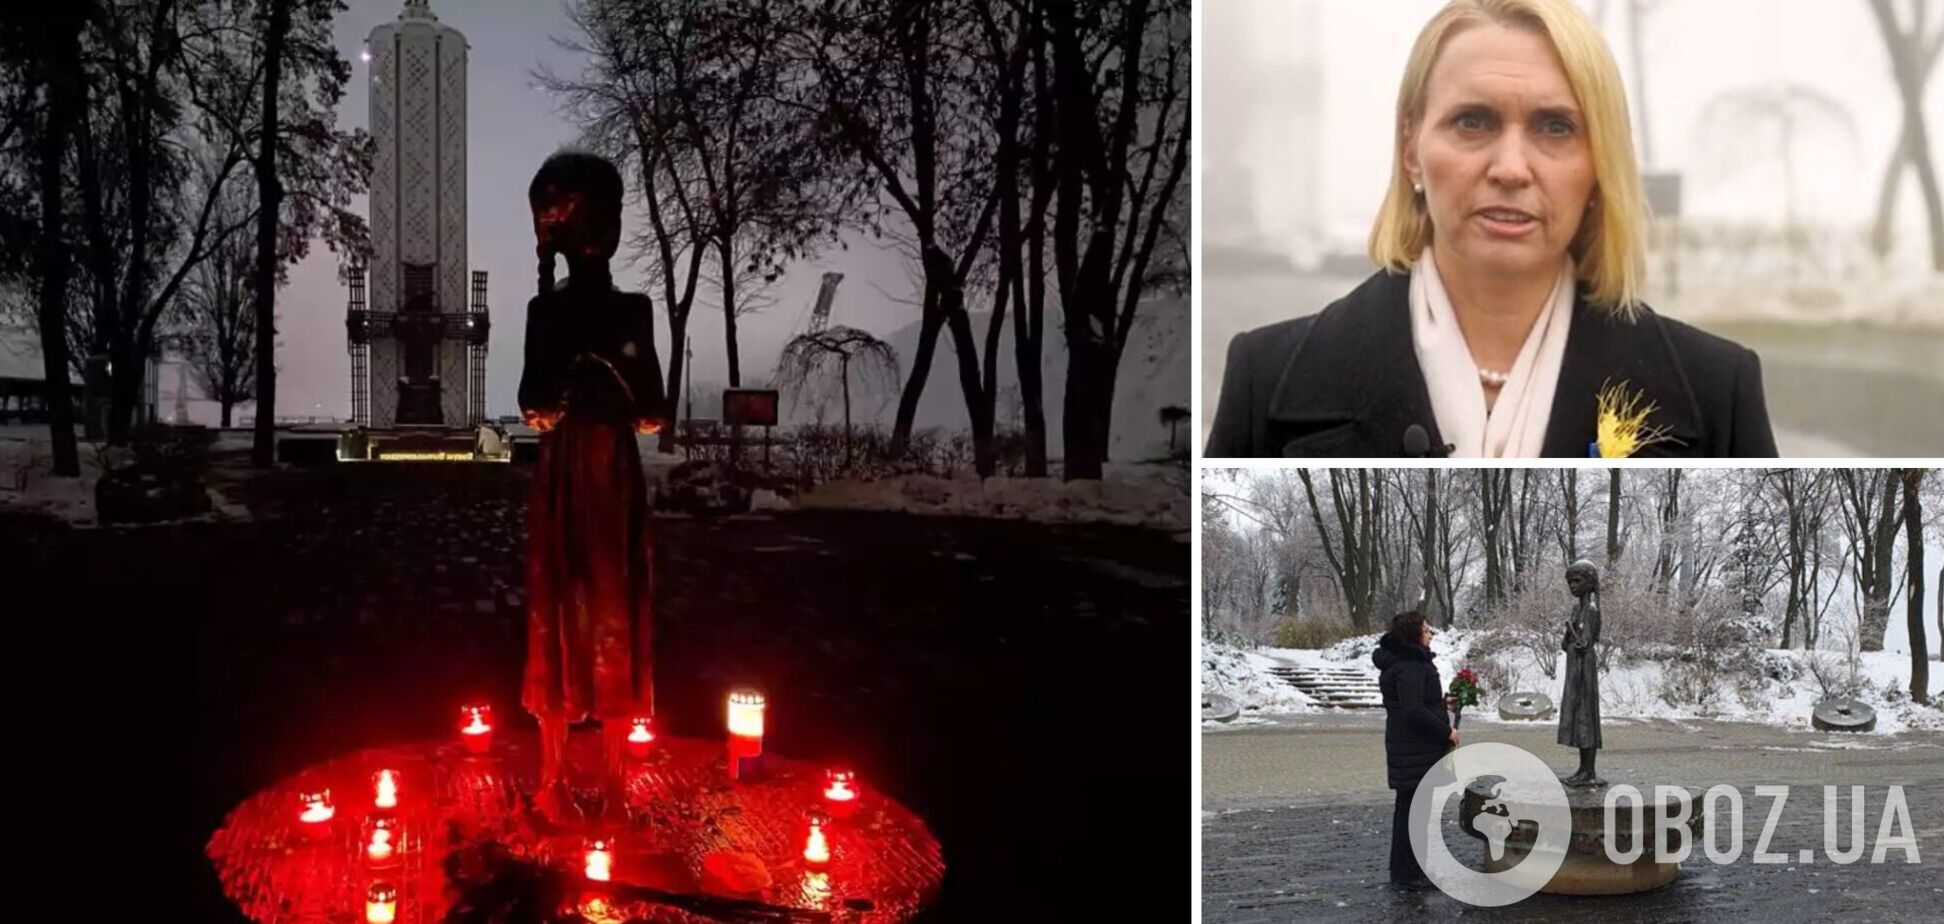 Послы США и Британии почтили память жертв Голодомора в Украине. Фото и видео